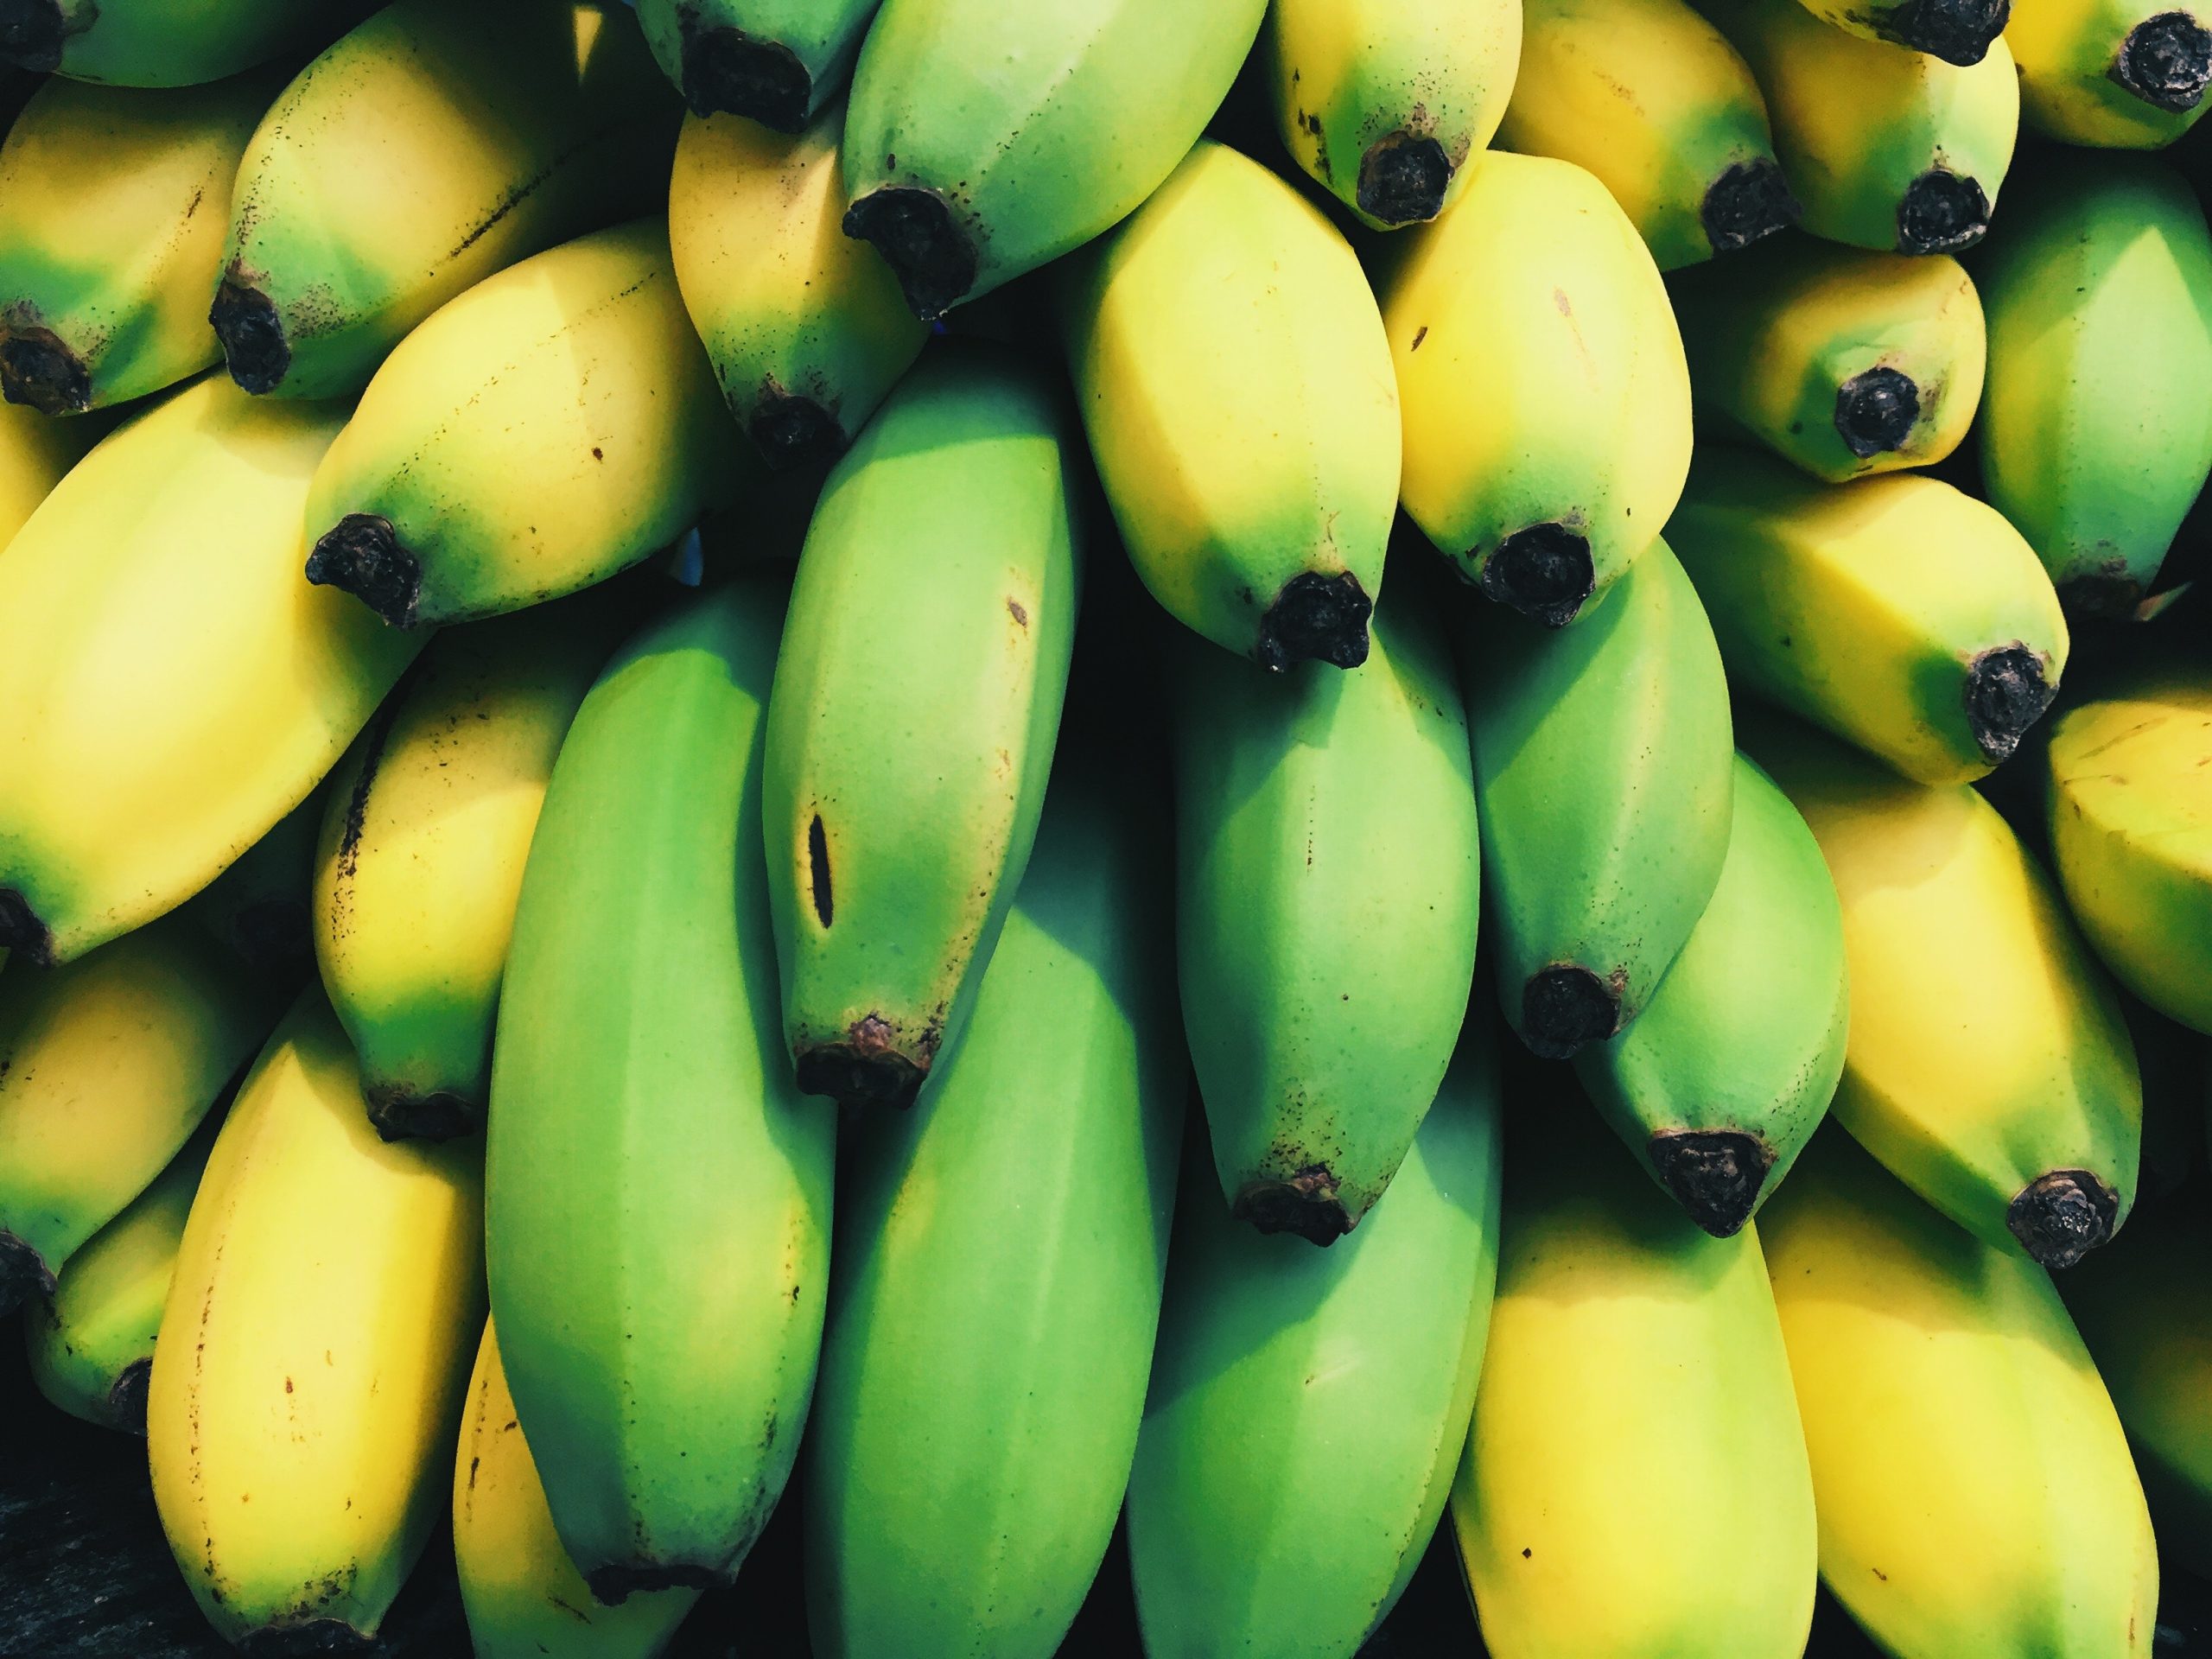 Μπανάνα, τι διαφορά έχει η κίτρινη από την πράσινη;